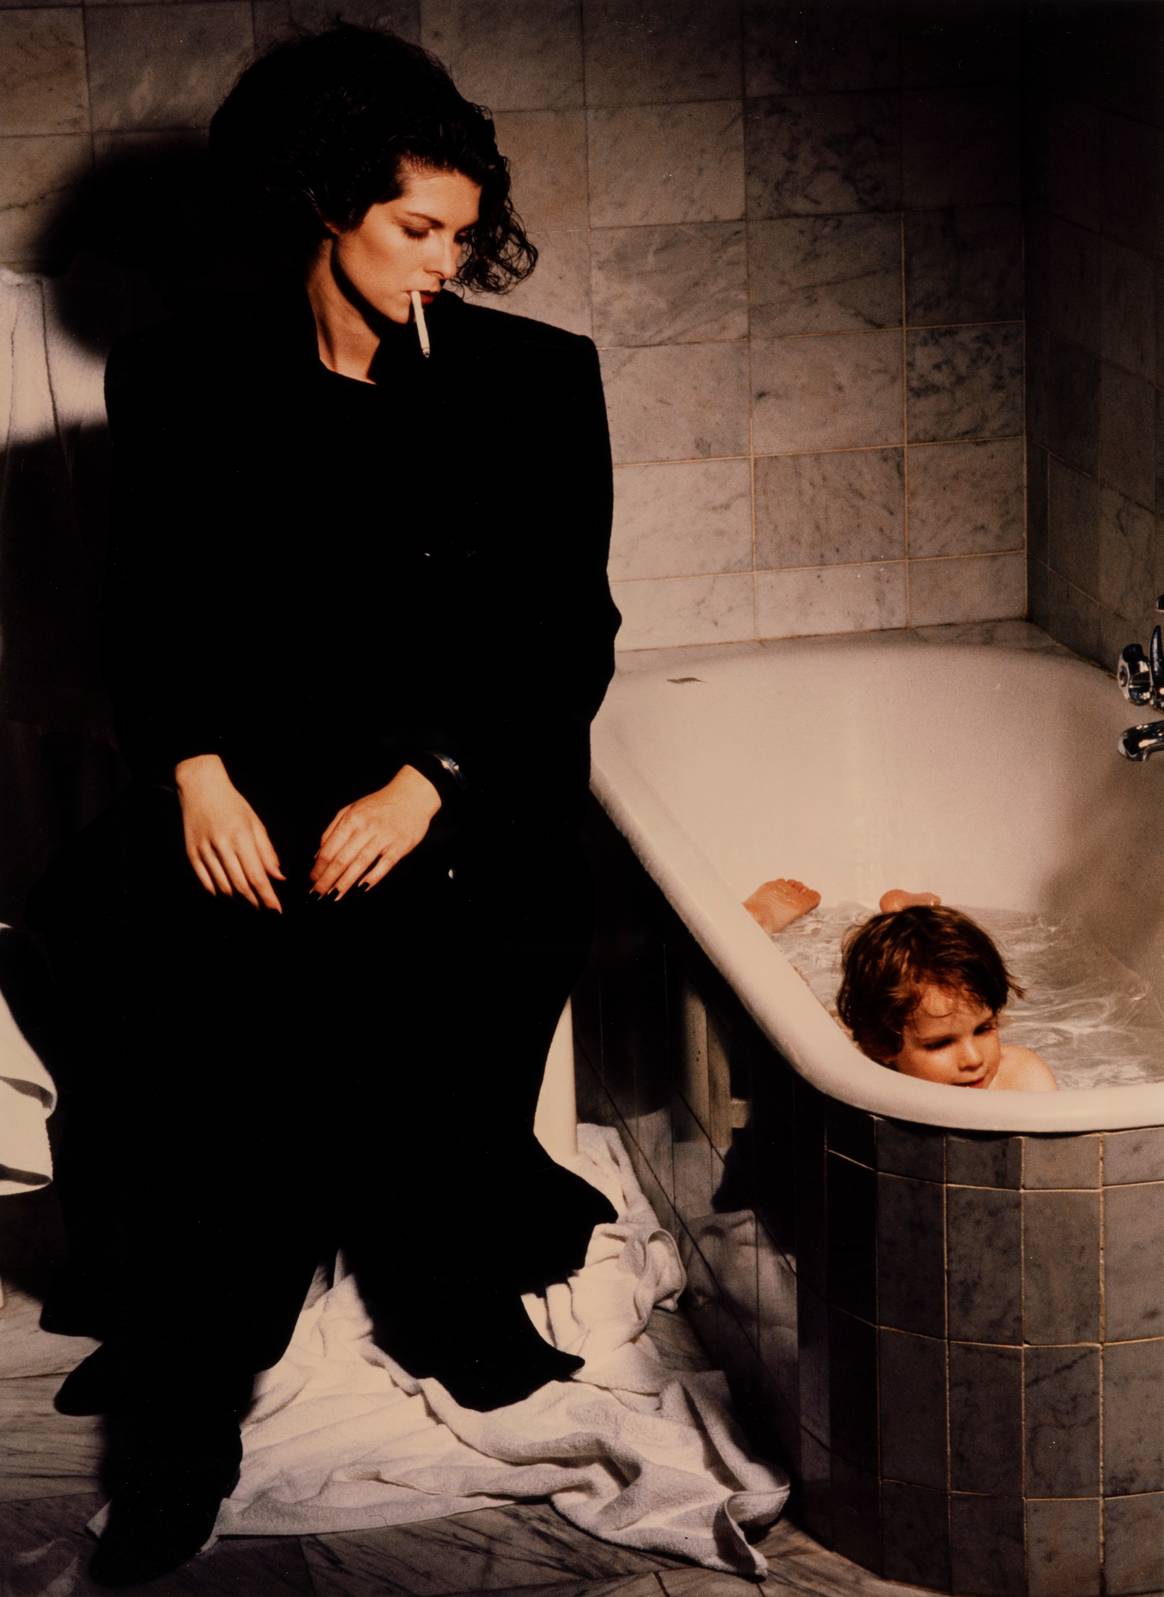 Suzan Bolkan in Erreuno, Vogue Italia, 1985. Bild: Charlotte
March, Deichtorhallen Hamburg/Sammlung Falckenberg